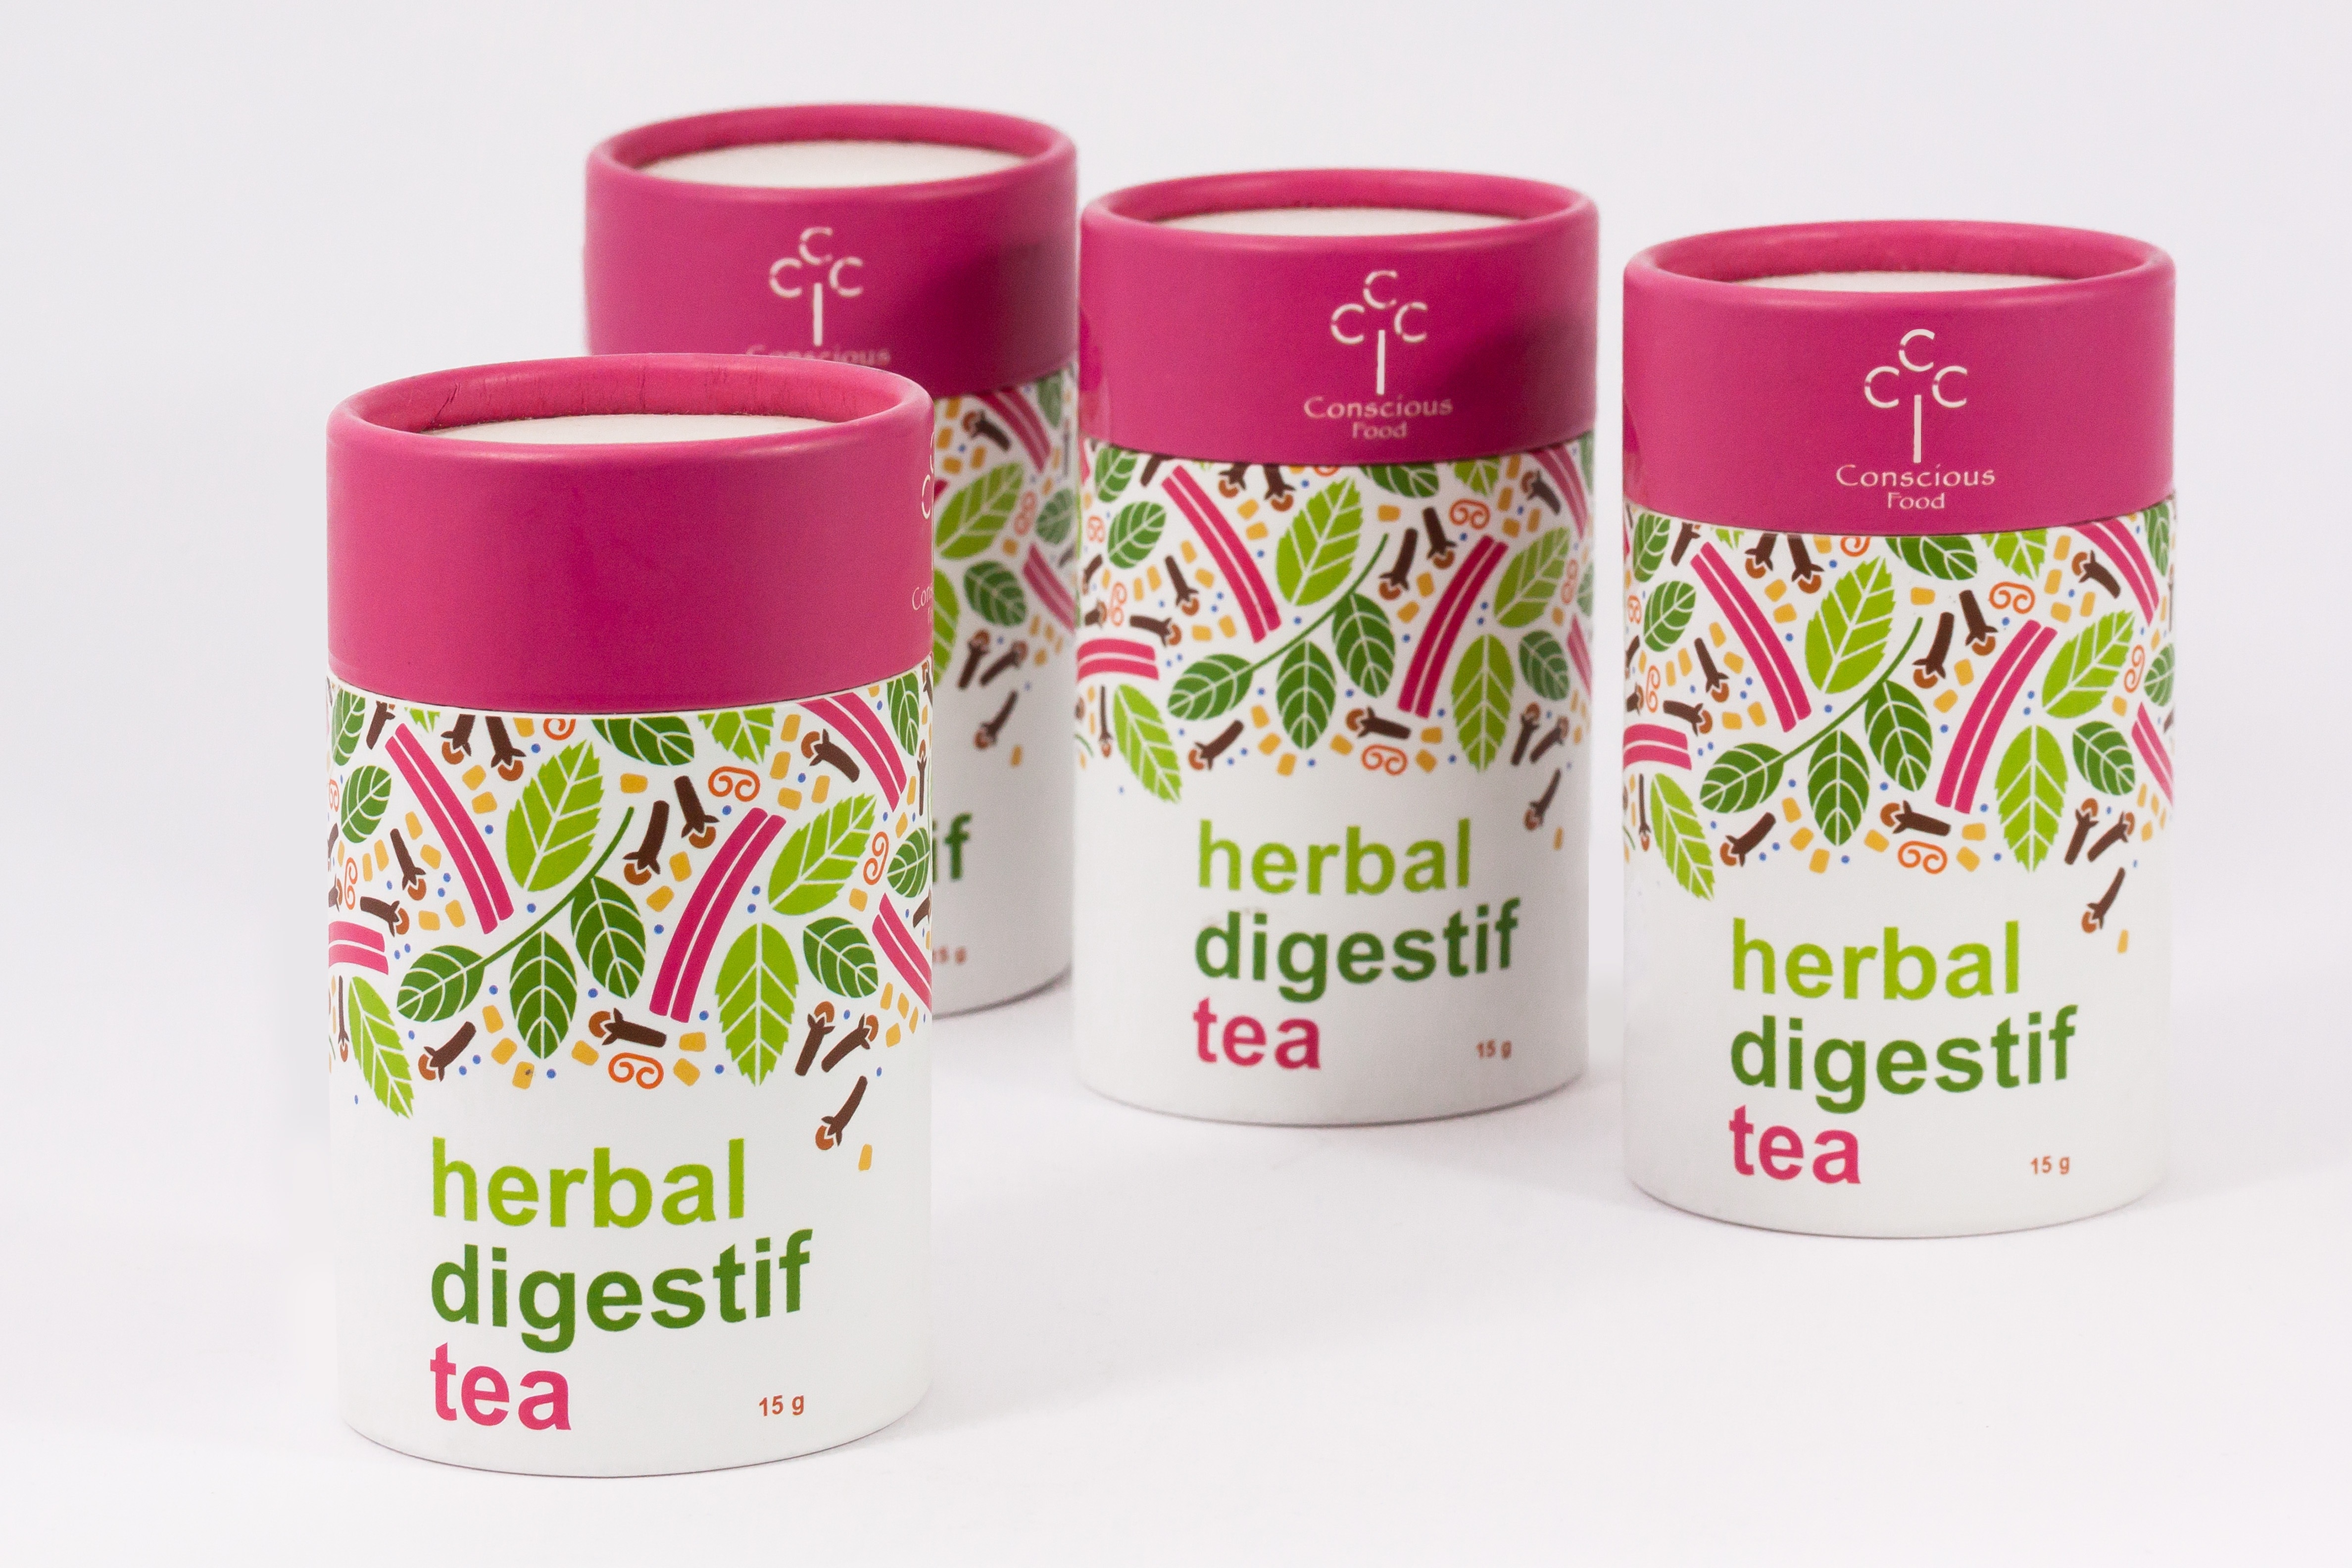 4 herbal digestif tea bottles